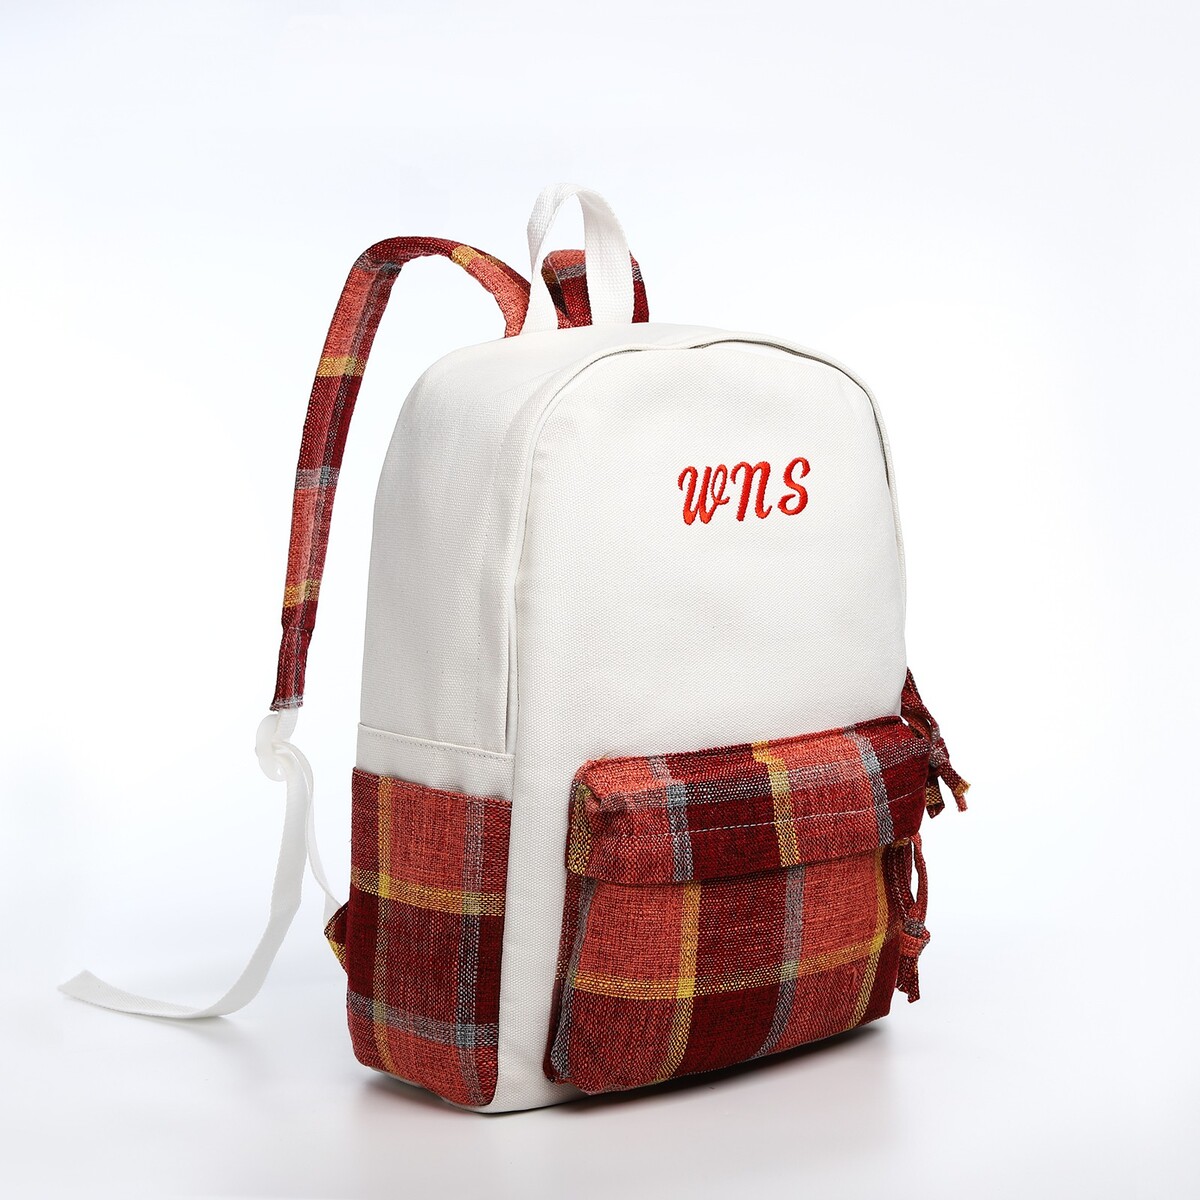 Рюкзак молодежный из текстиля, 3 кармана, цвет белый/коричневый/красный рюкзак текстильный со шнуровкой fearless 38х29х11 см коричневый